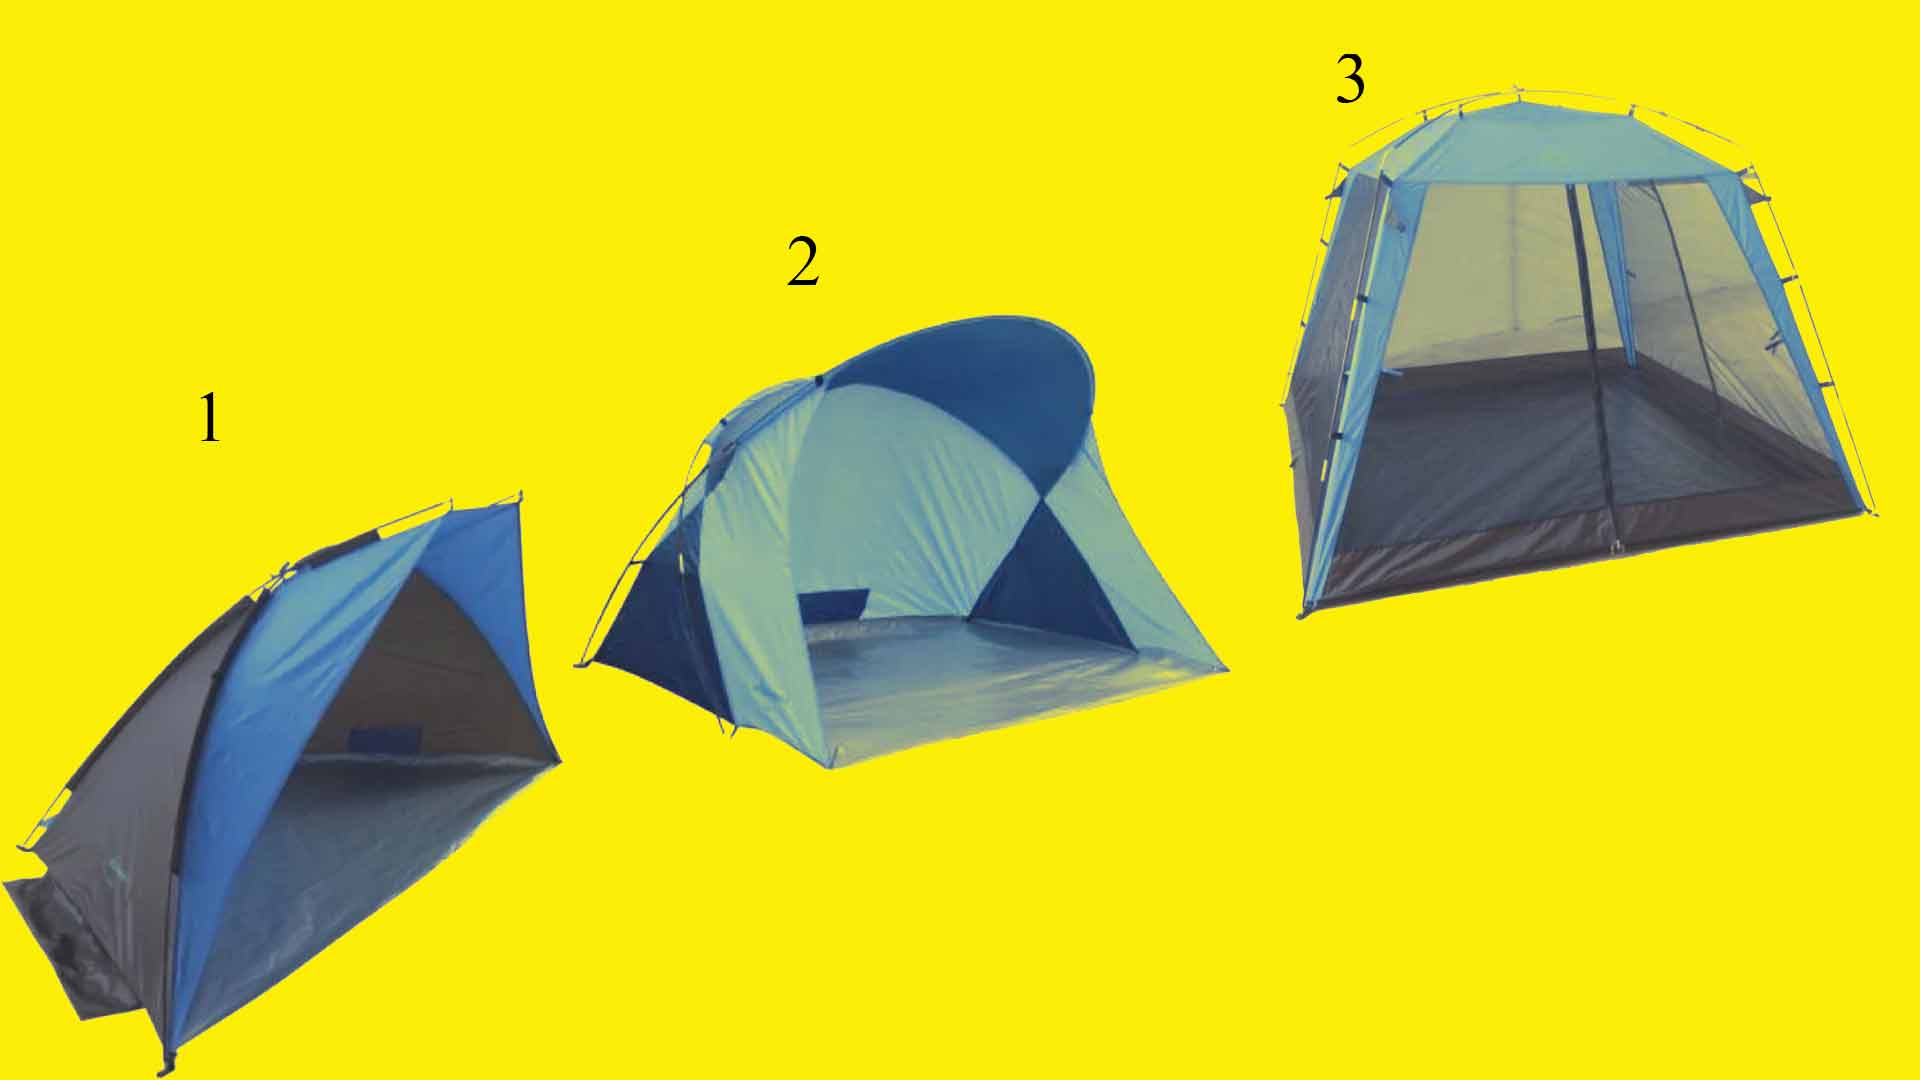 Пляжные палатки – изображения для выбора